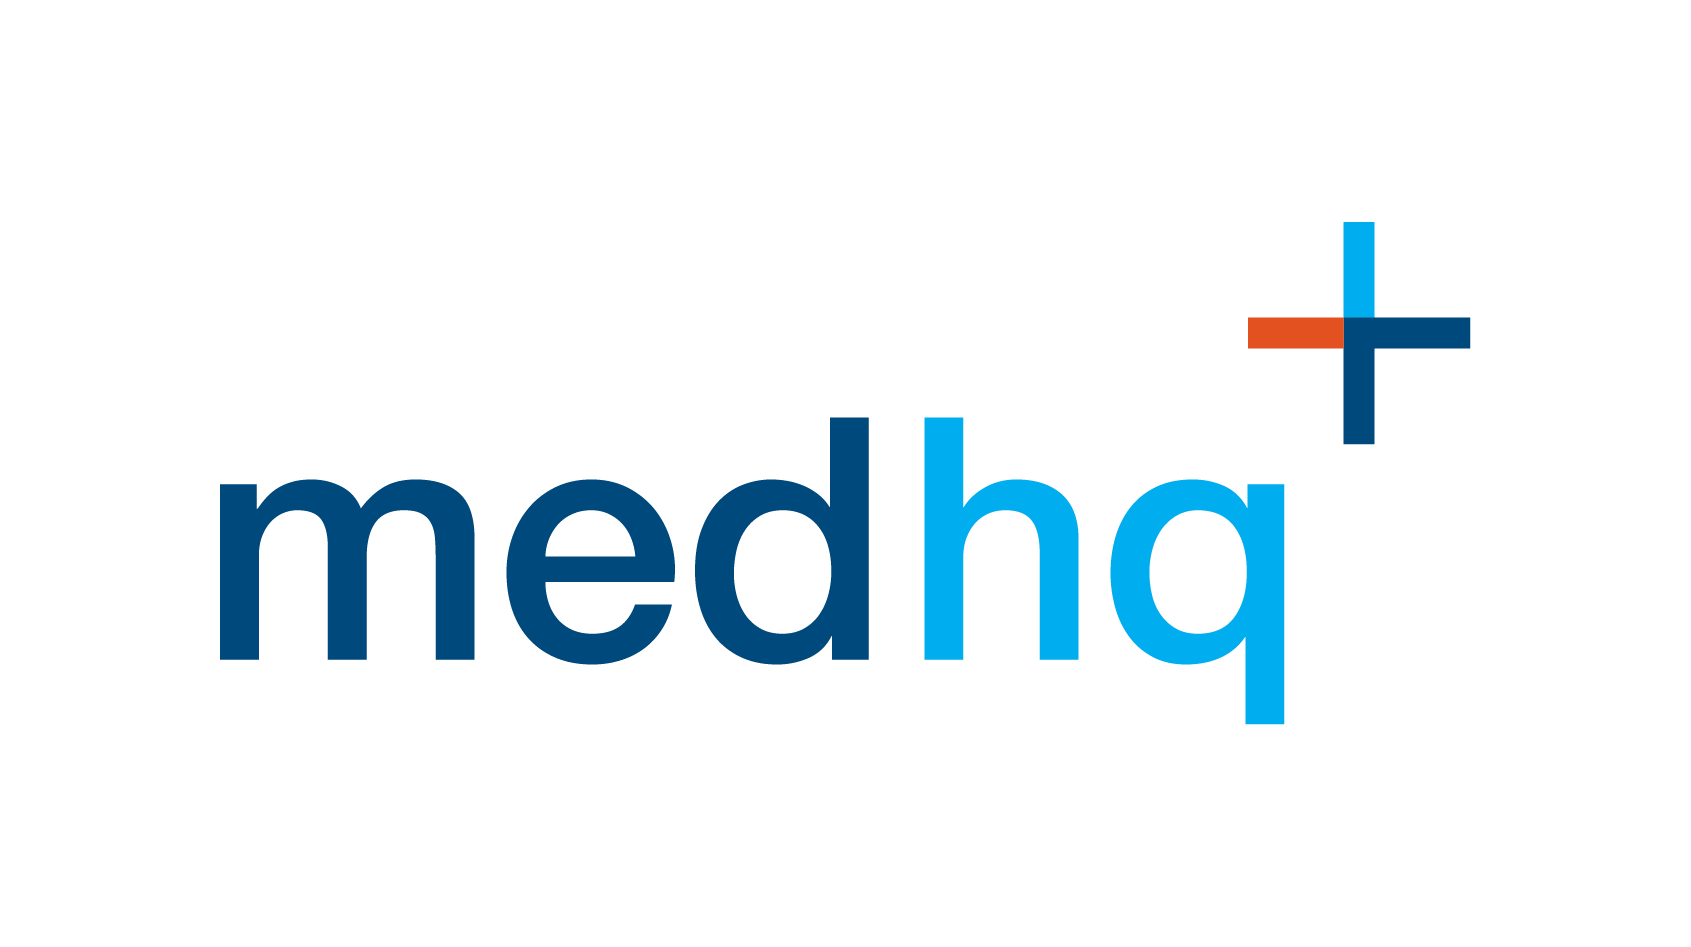 MedHQ Logo